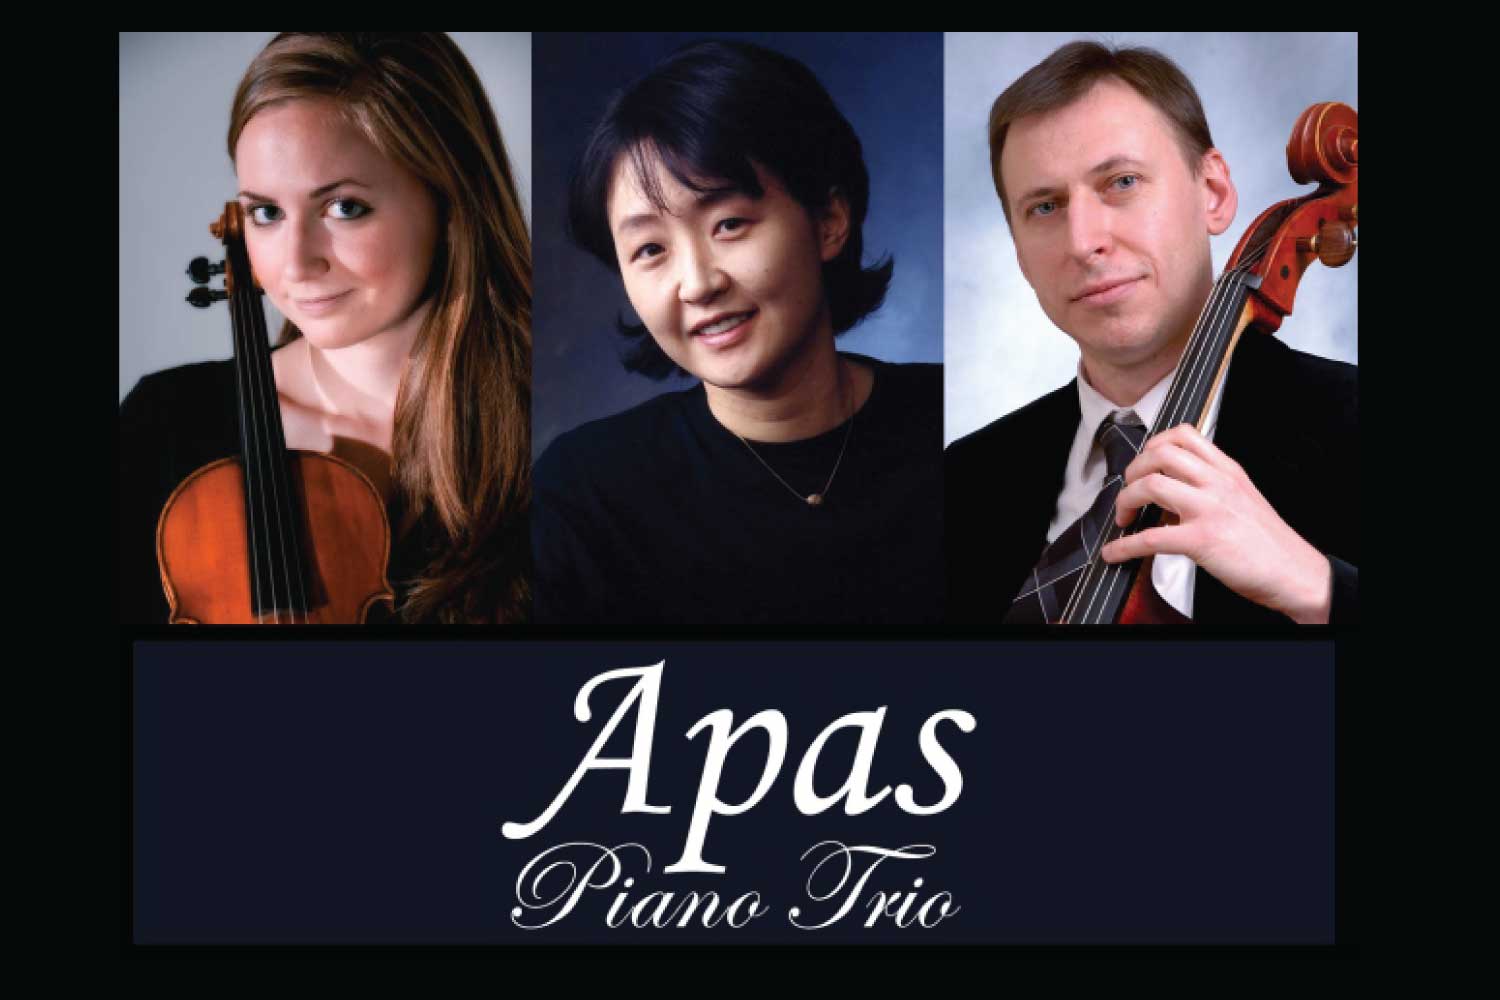 Concert: The Apas Piano Trio - The Selfhelp Home